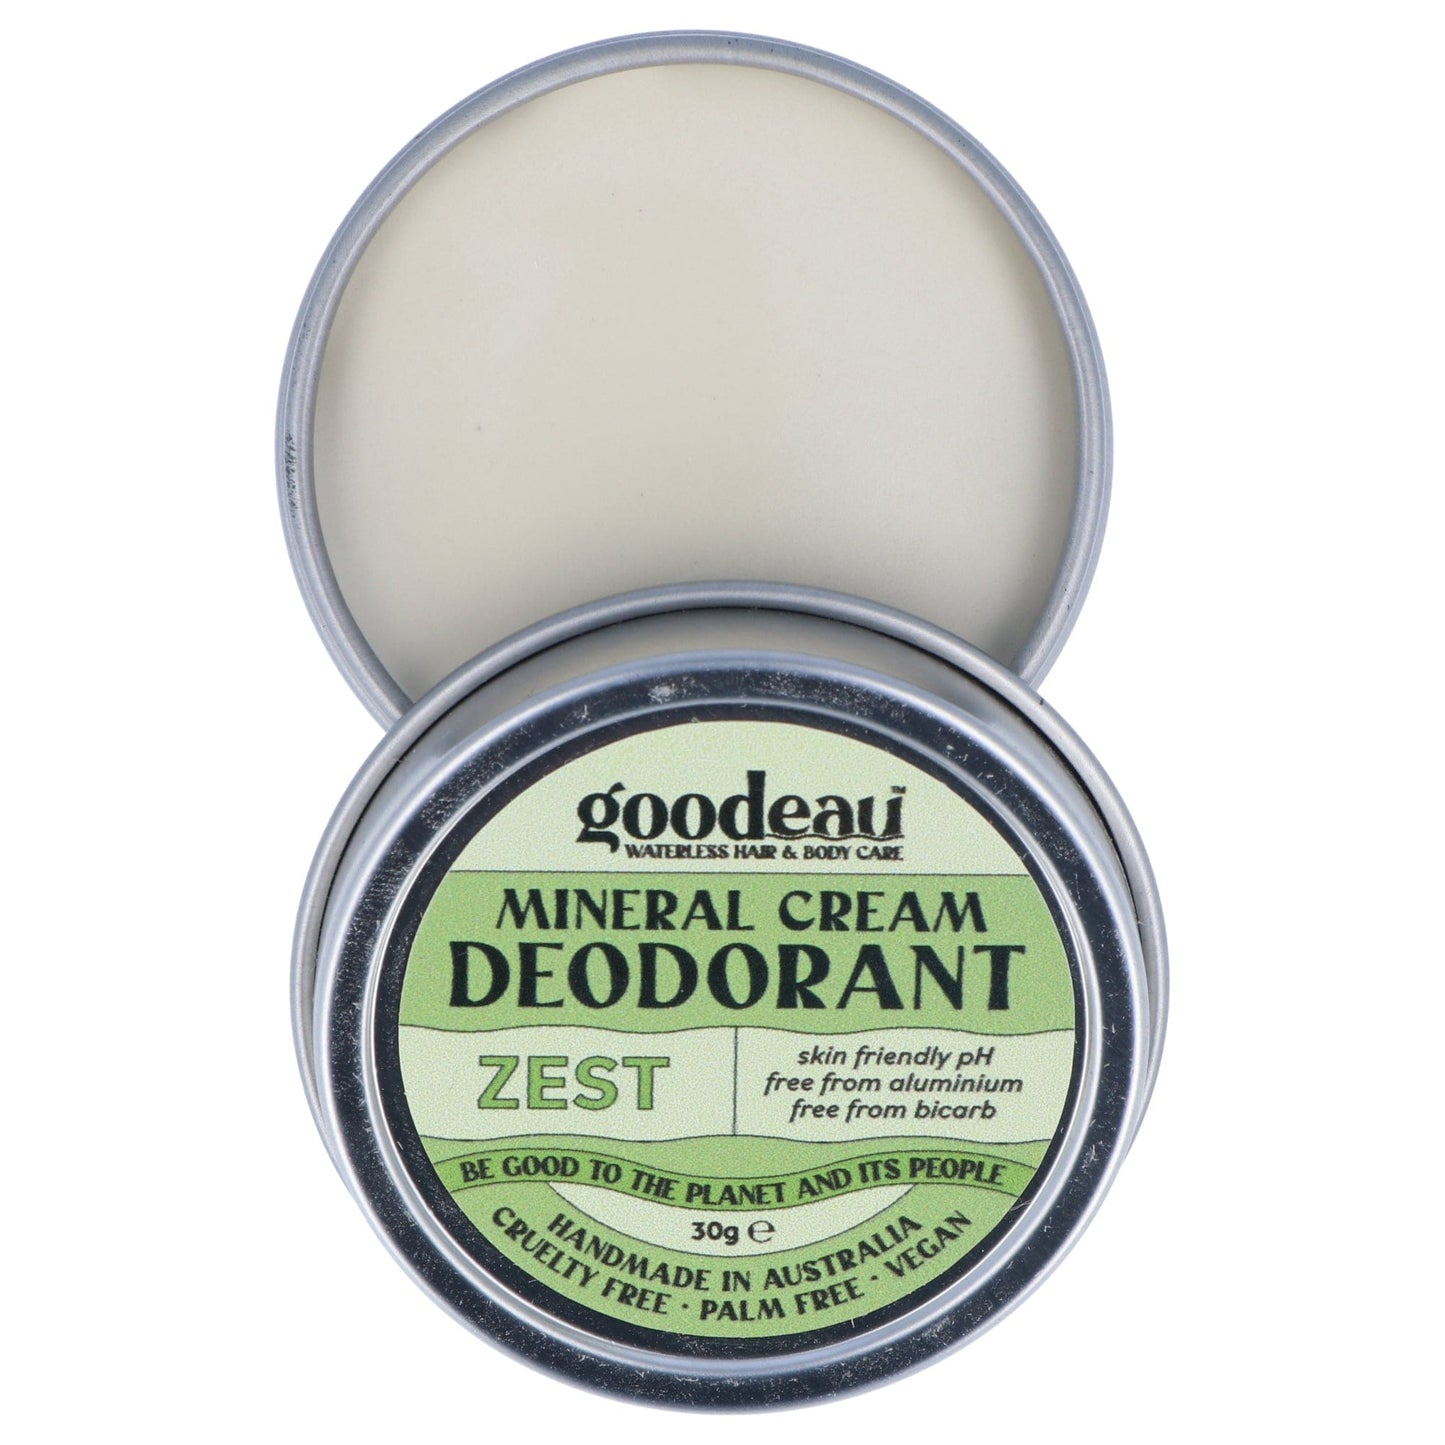 Goodeau MINI Deodorant 30g - Zest